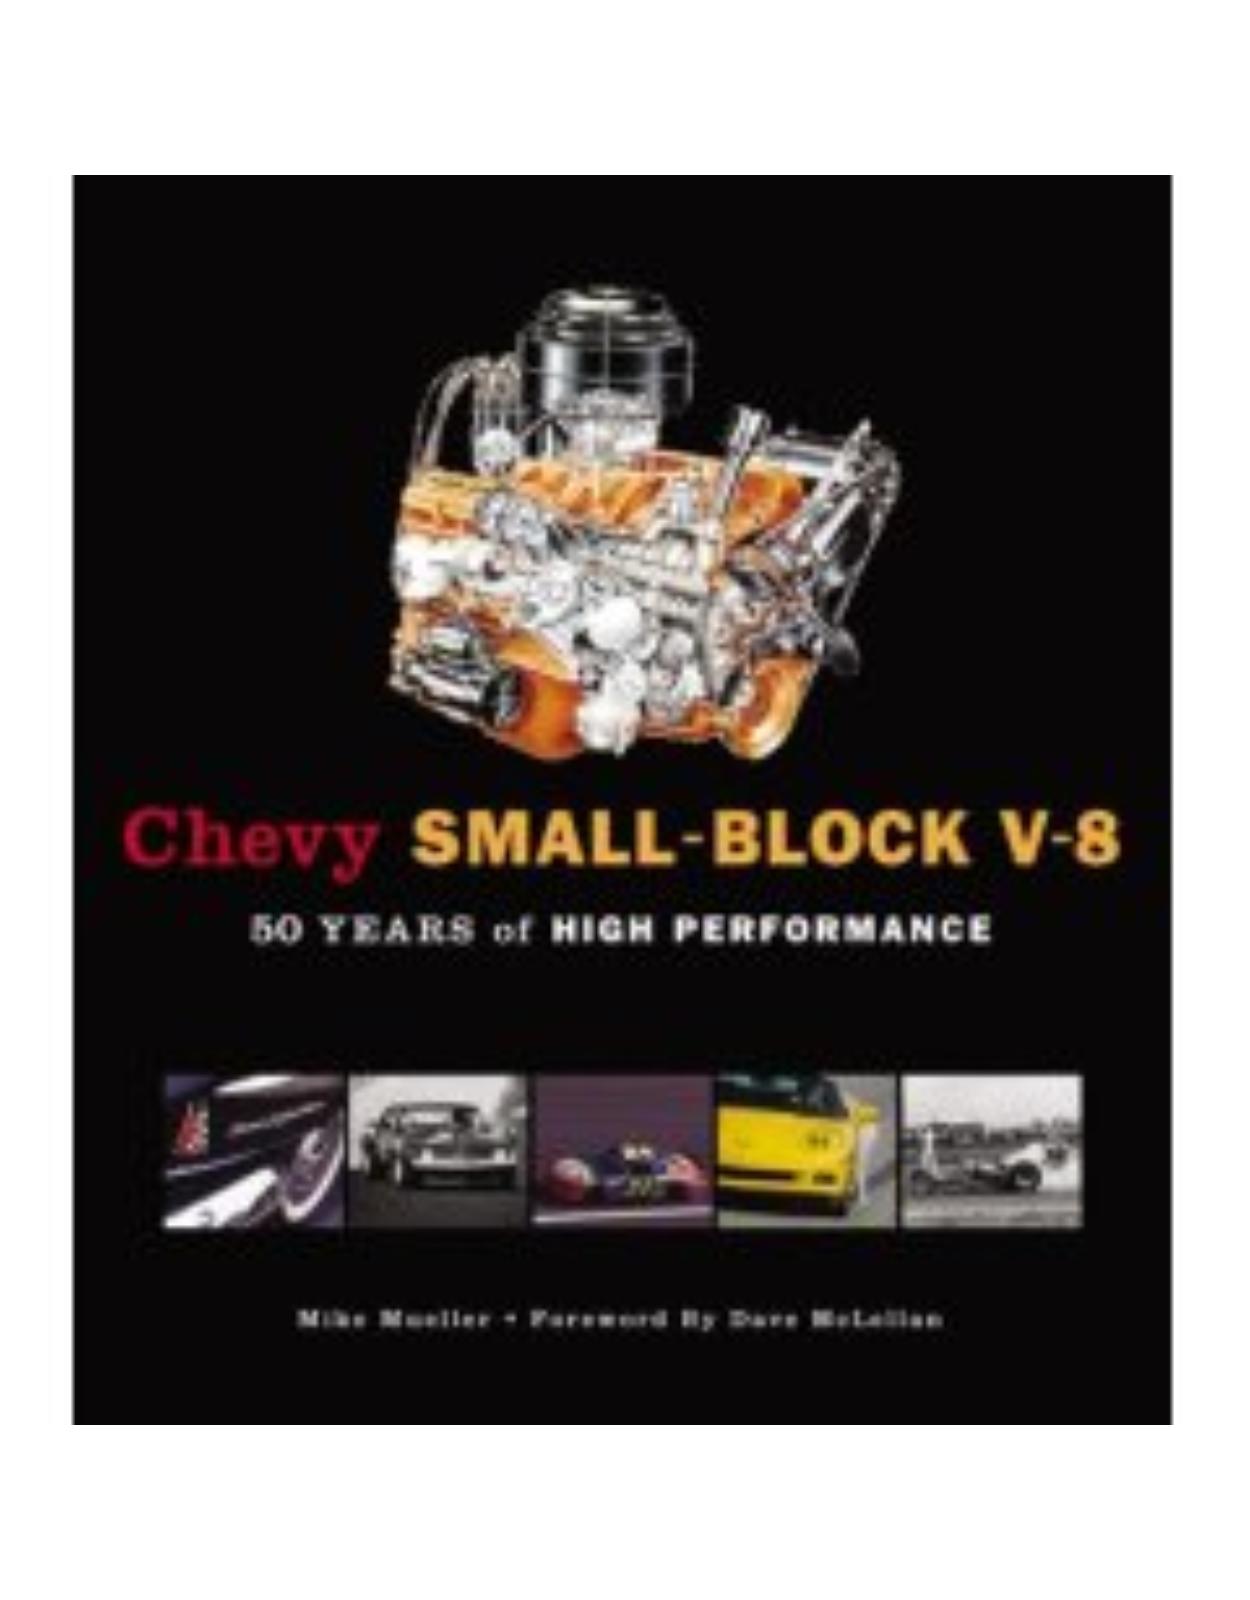 Chevy Small-Block V-8